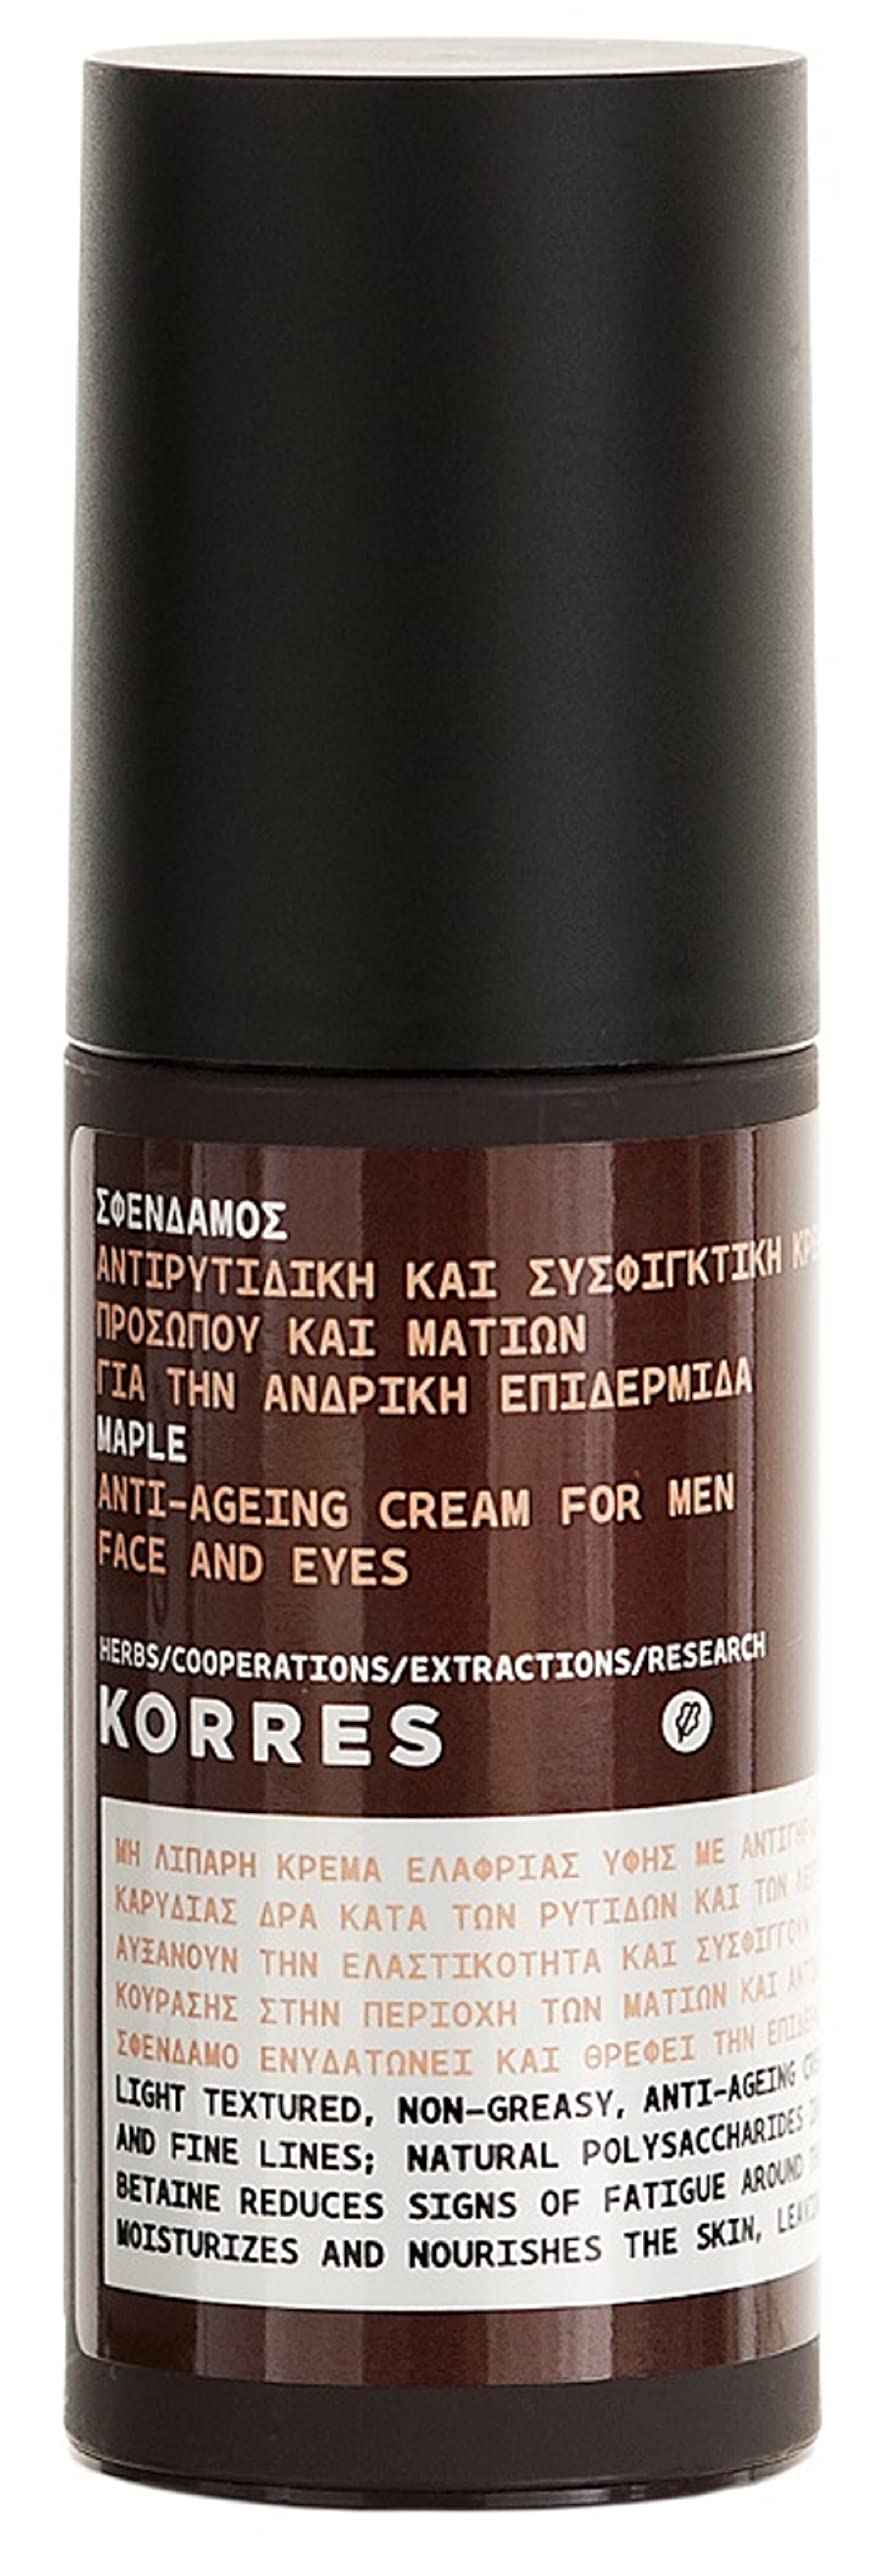 KORRES Maple Anti-Aging Creme für Gesicht und Augen, dermatologisch getestet & für Veganer geeignet, 50 ml